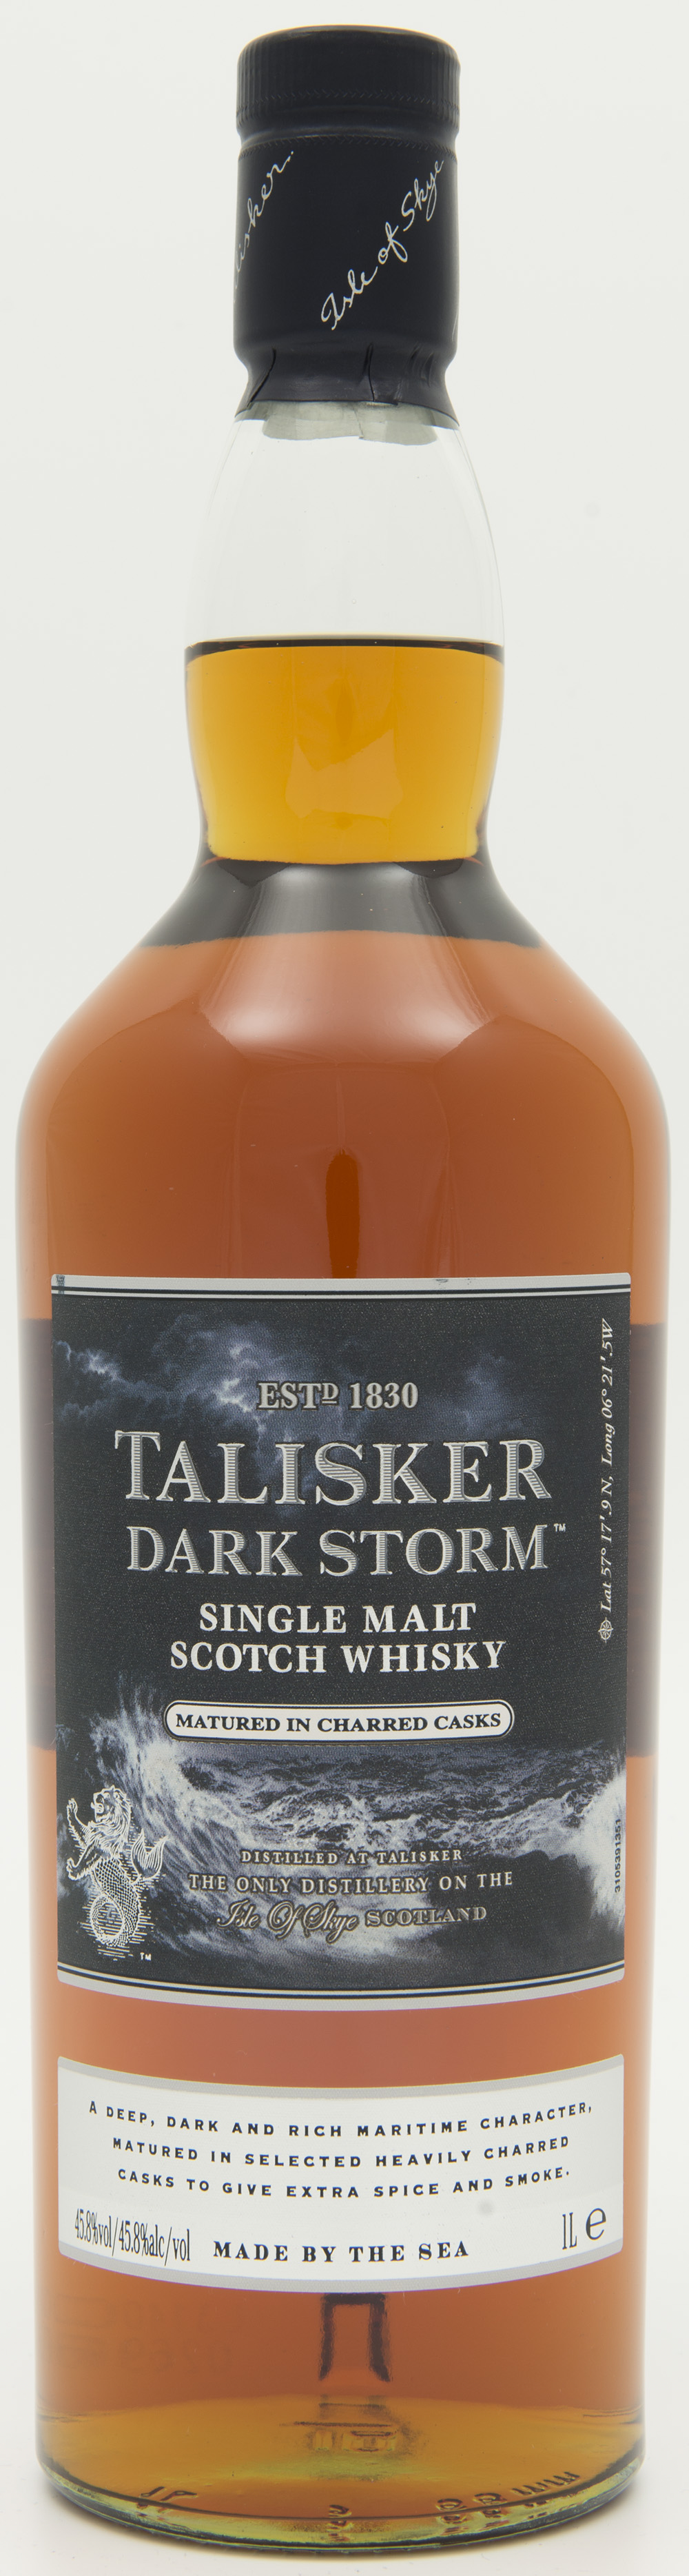 Billede: DSC_3671 Talisker Dark Storm - bottle front.jpg